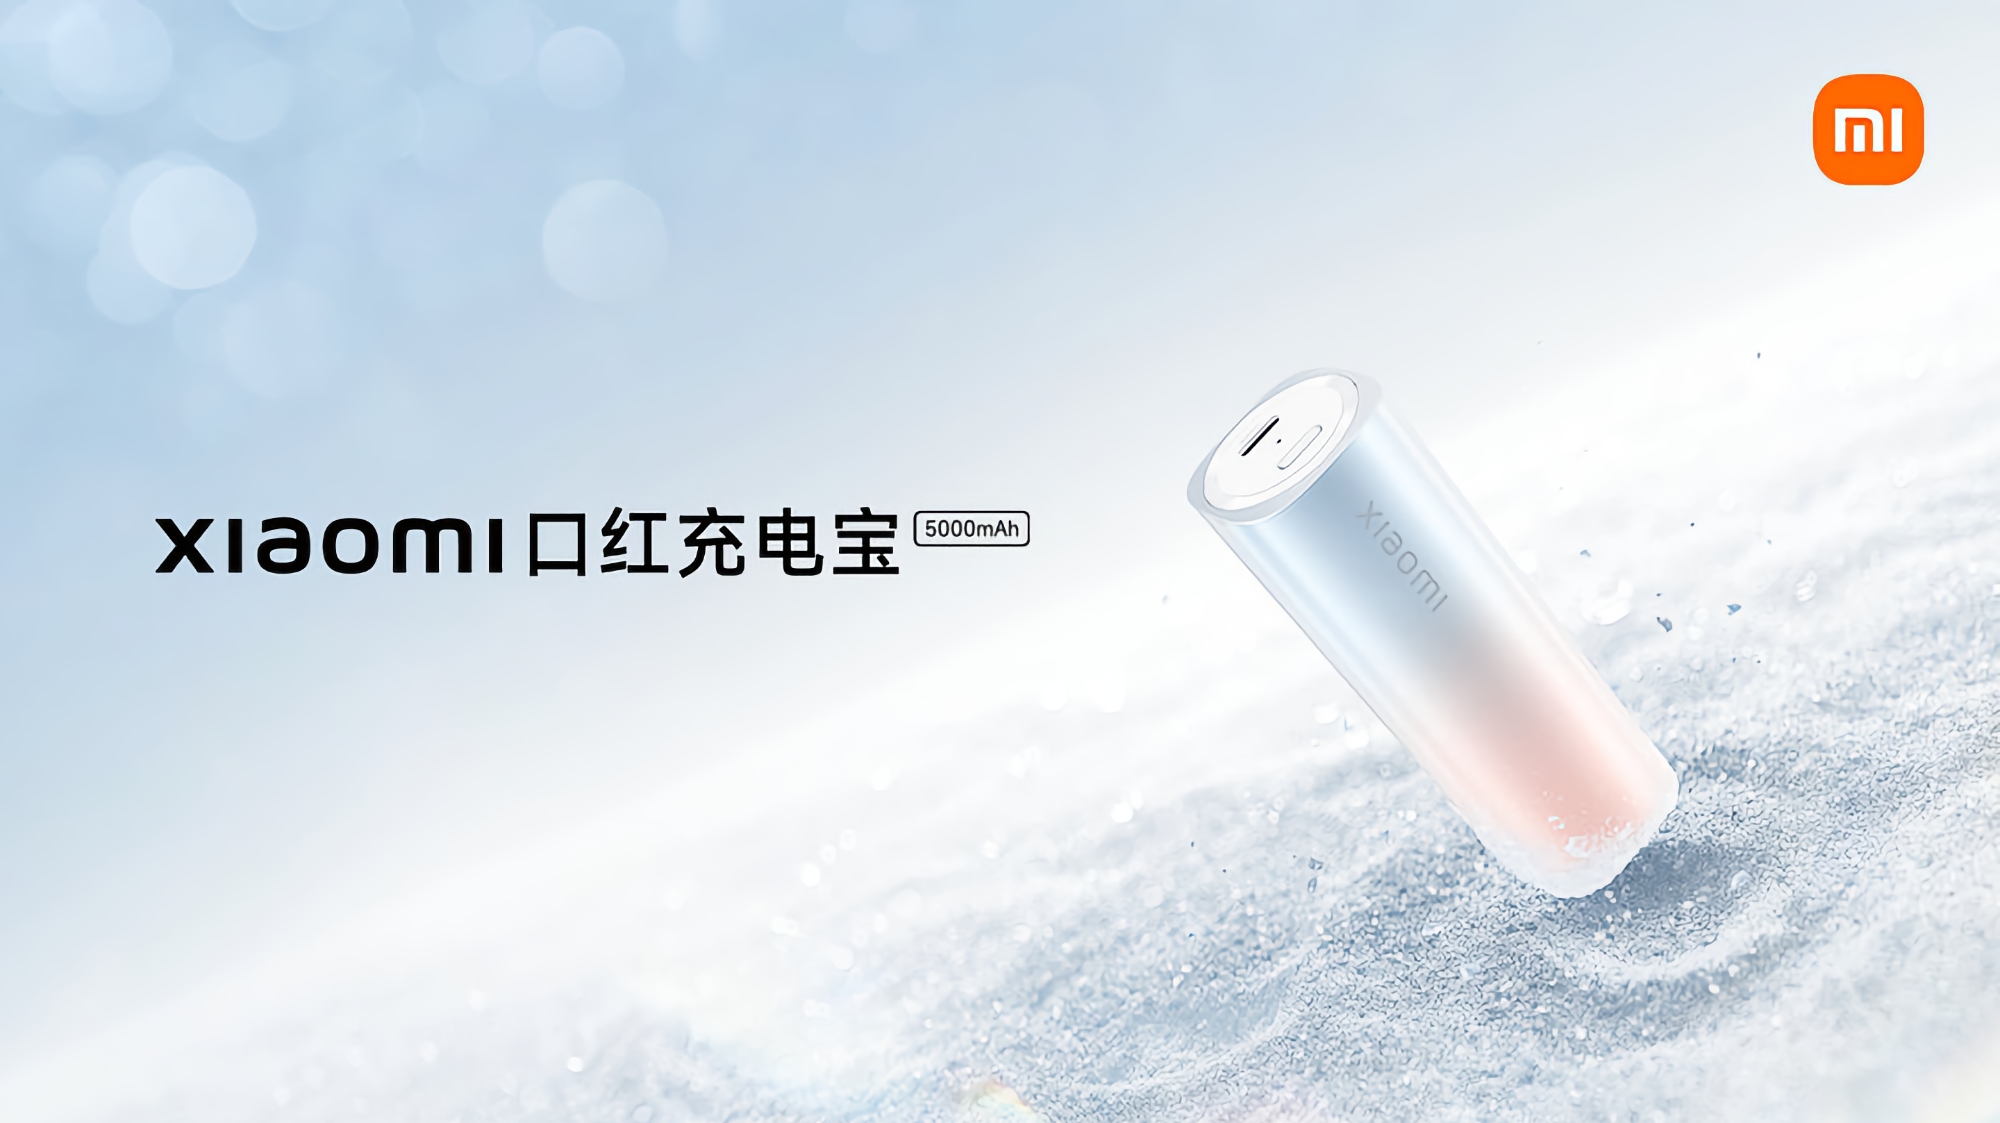 Xiaomi ha presentado un powerbank con forma de lápiz de labios de 5000 mAh con soporte de carga rápida de 20W